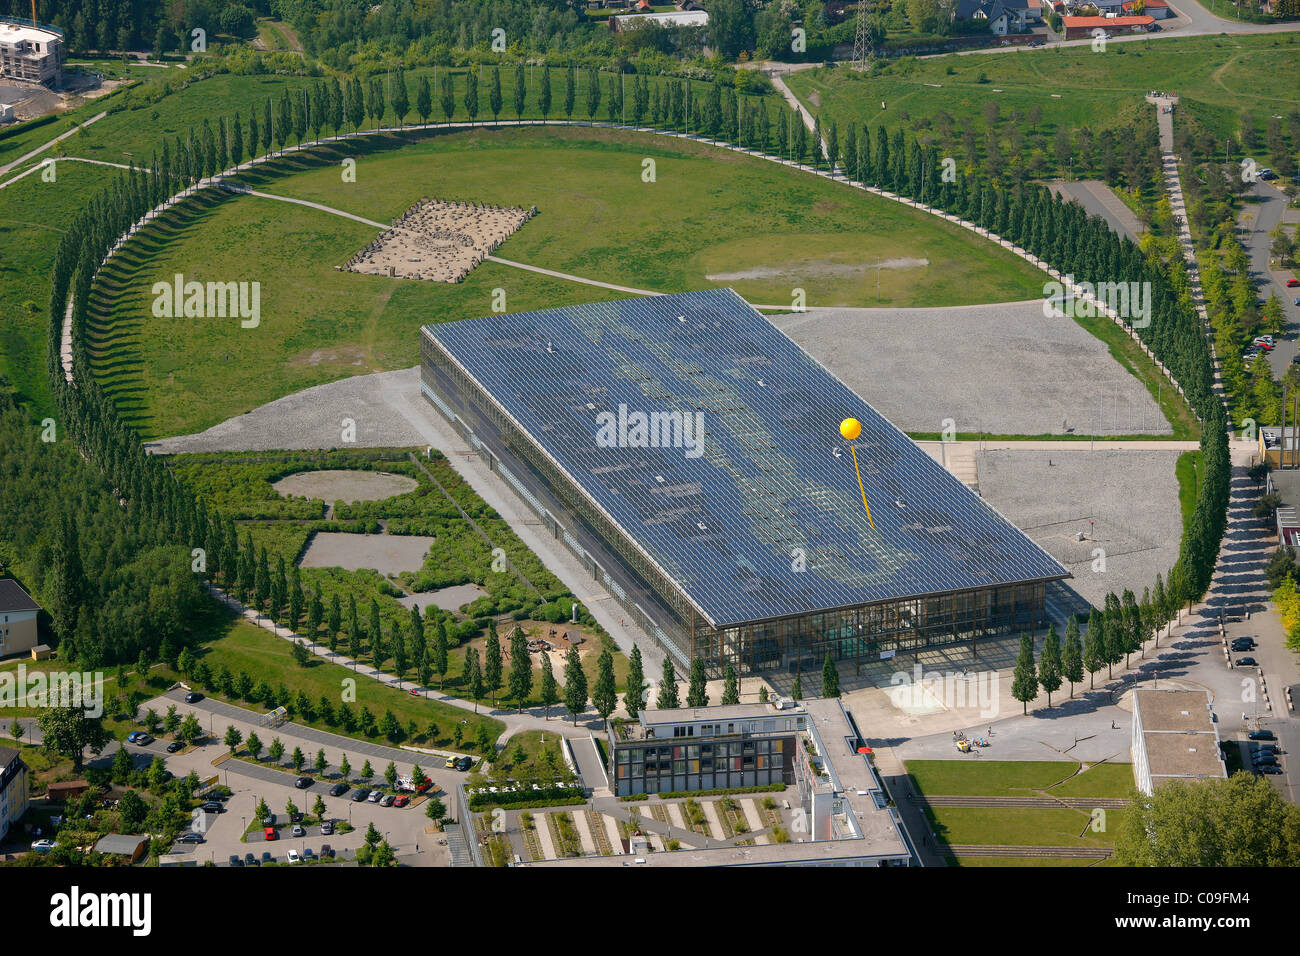 Luftaufnahme, ehemalige mine Mont Cenis 1, 3, 5 mit der Solarakademie Mt.Cenis solar Academy, Stadtteil Sodingen, Herne, Stockfoto